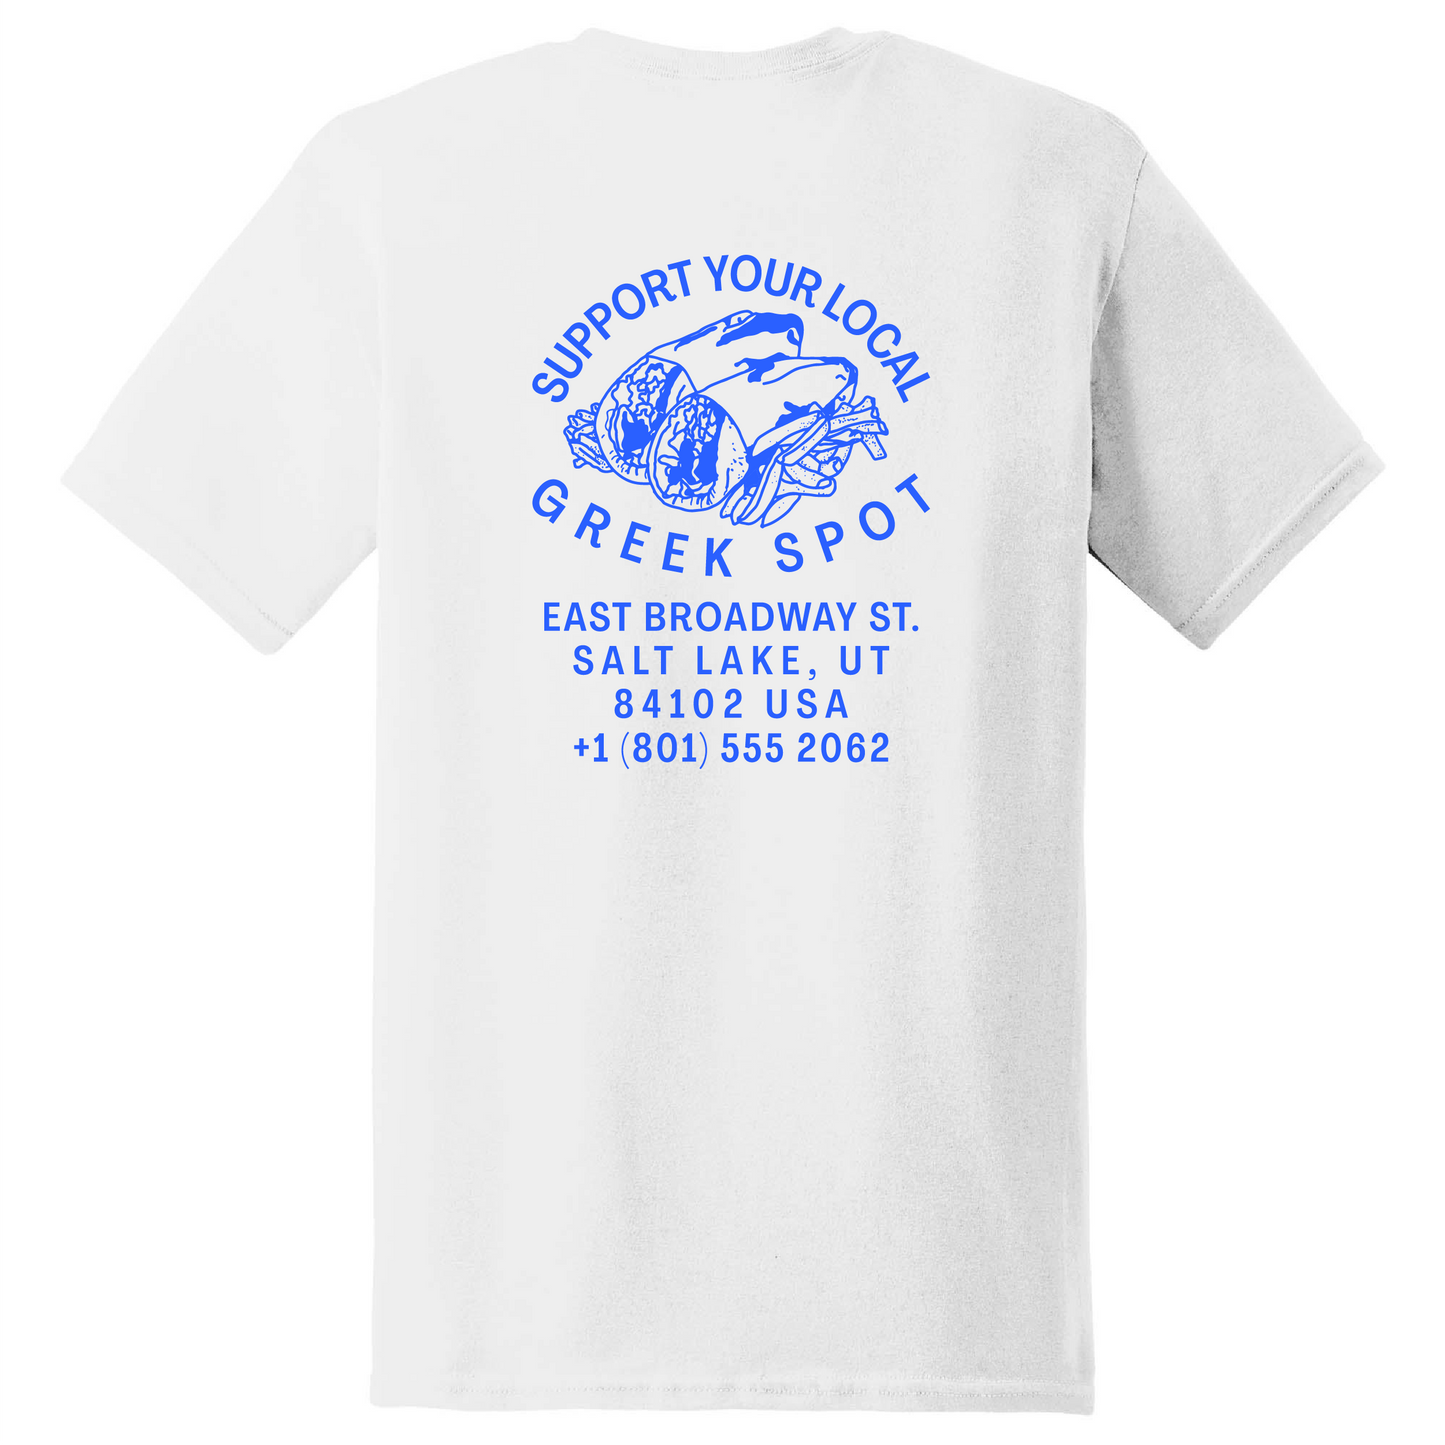 Greek Spot Shirt